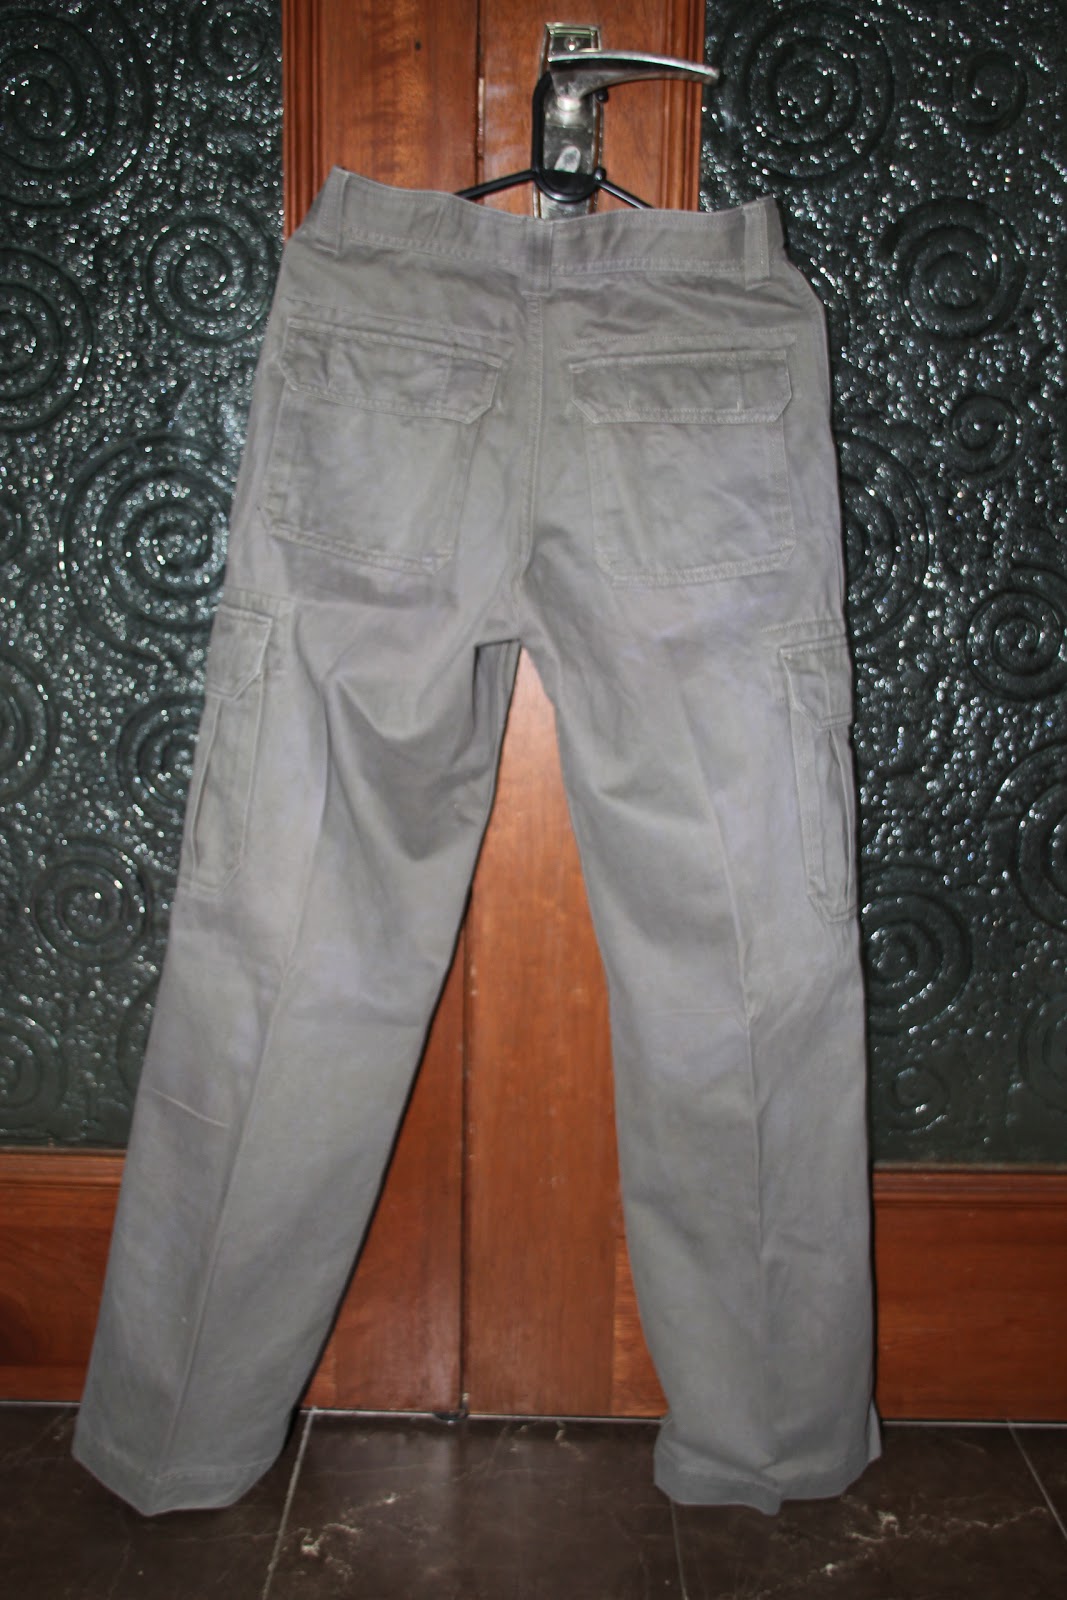 Hipster Closet: Green Gap Cargo Pants - RM75